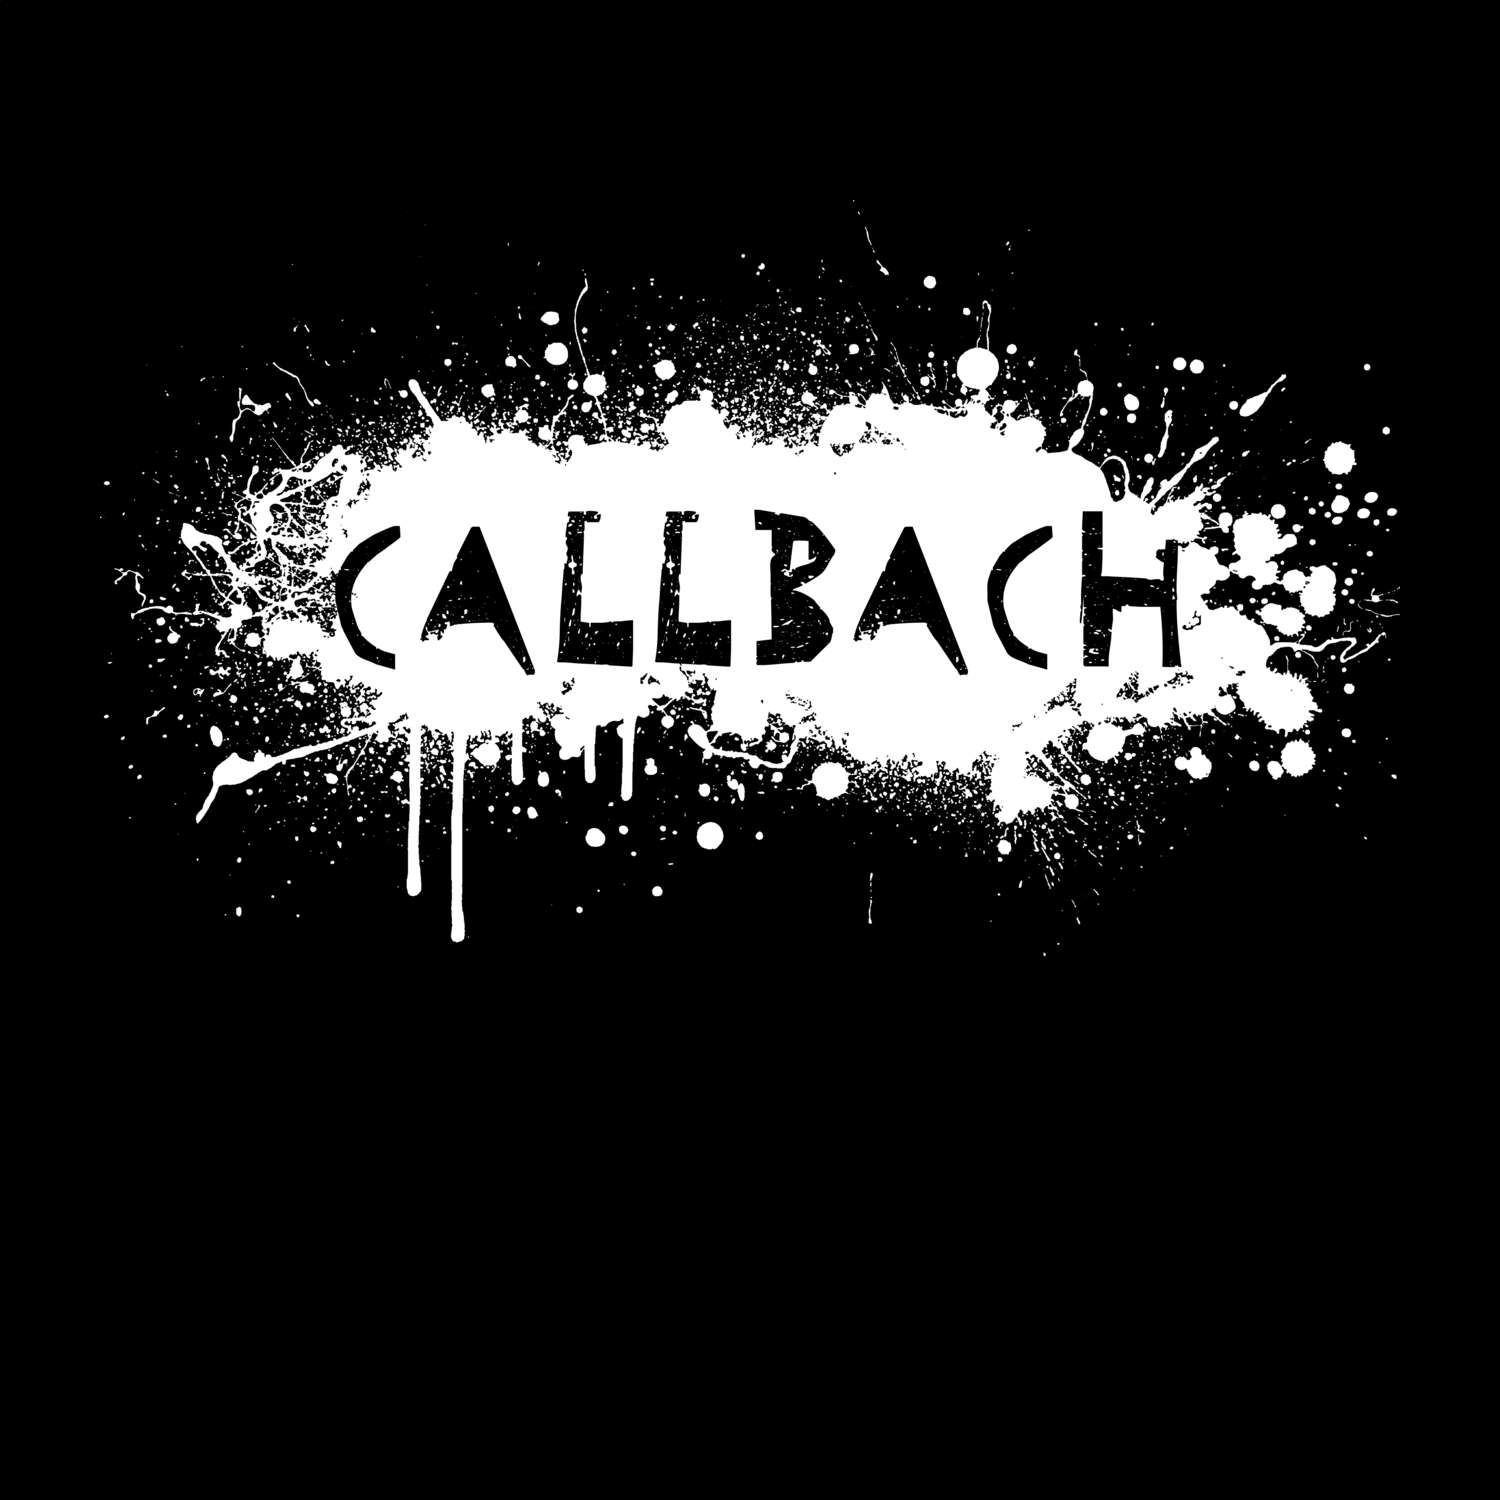 Callbach T-Shirt »Paint Splash Punk«